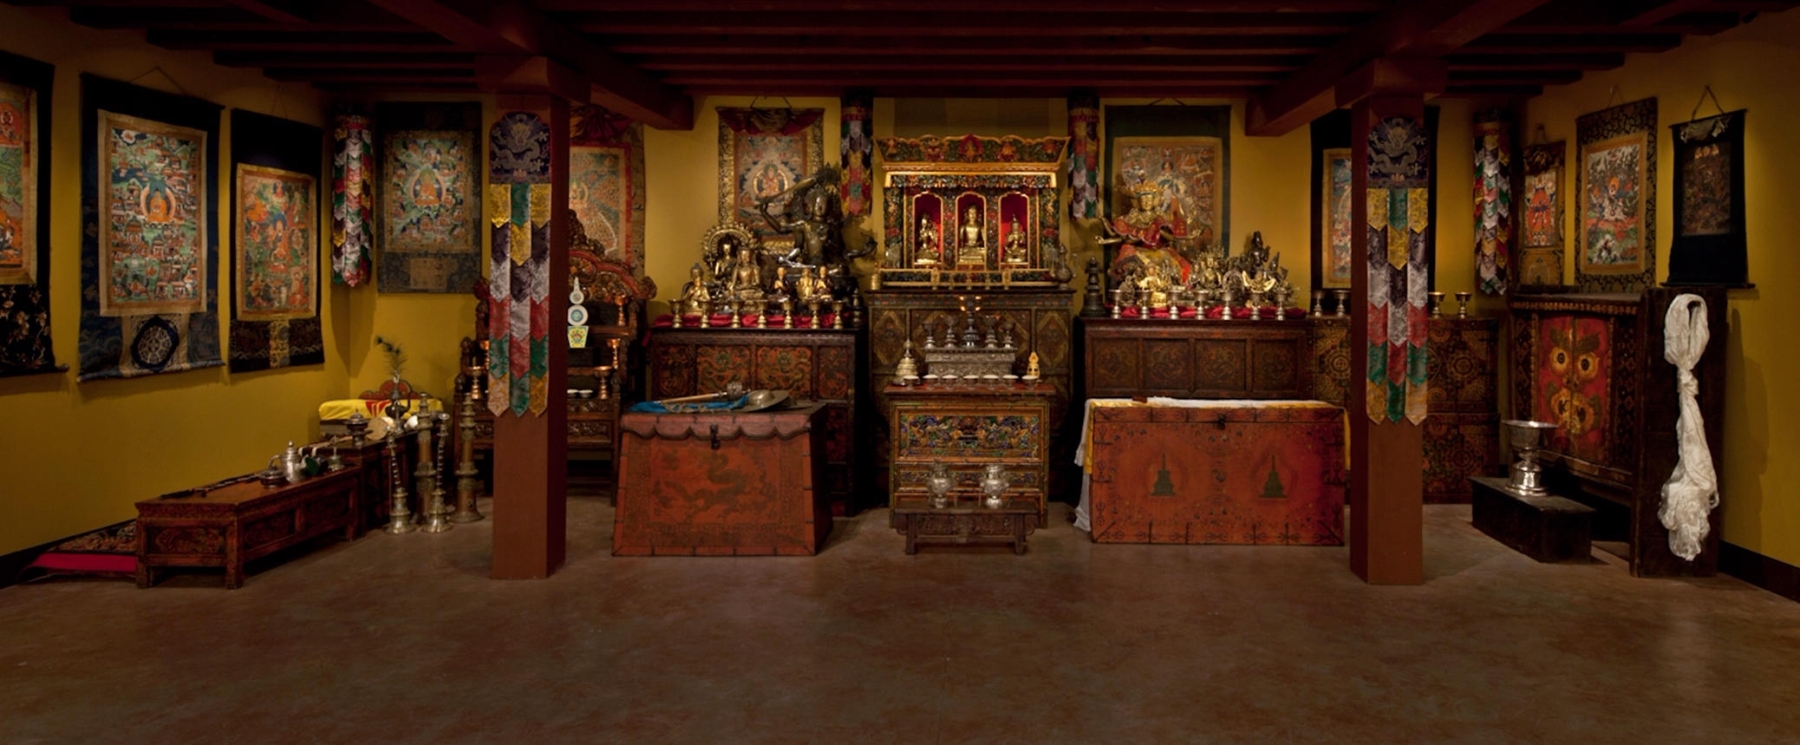 shrine room tibetan rubin museum